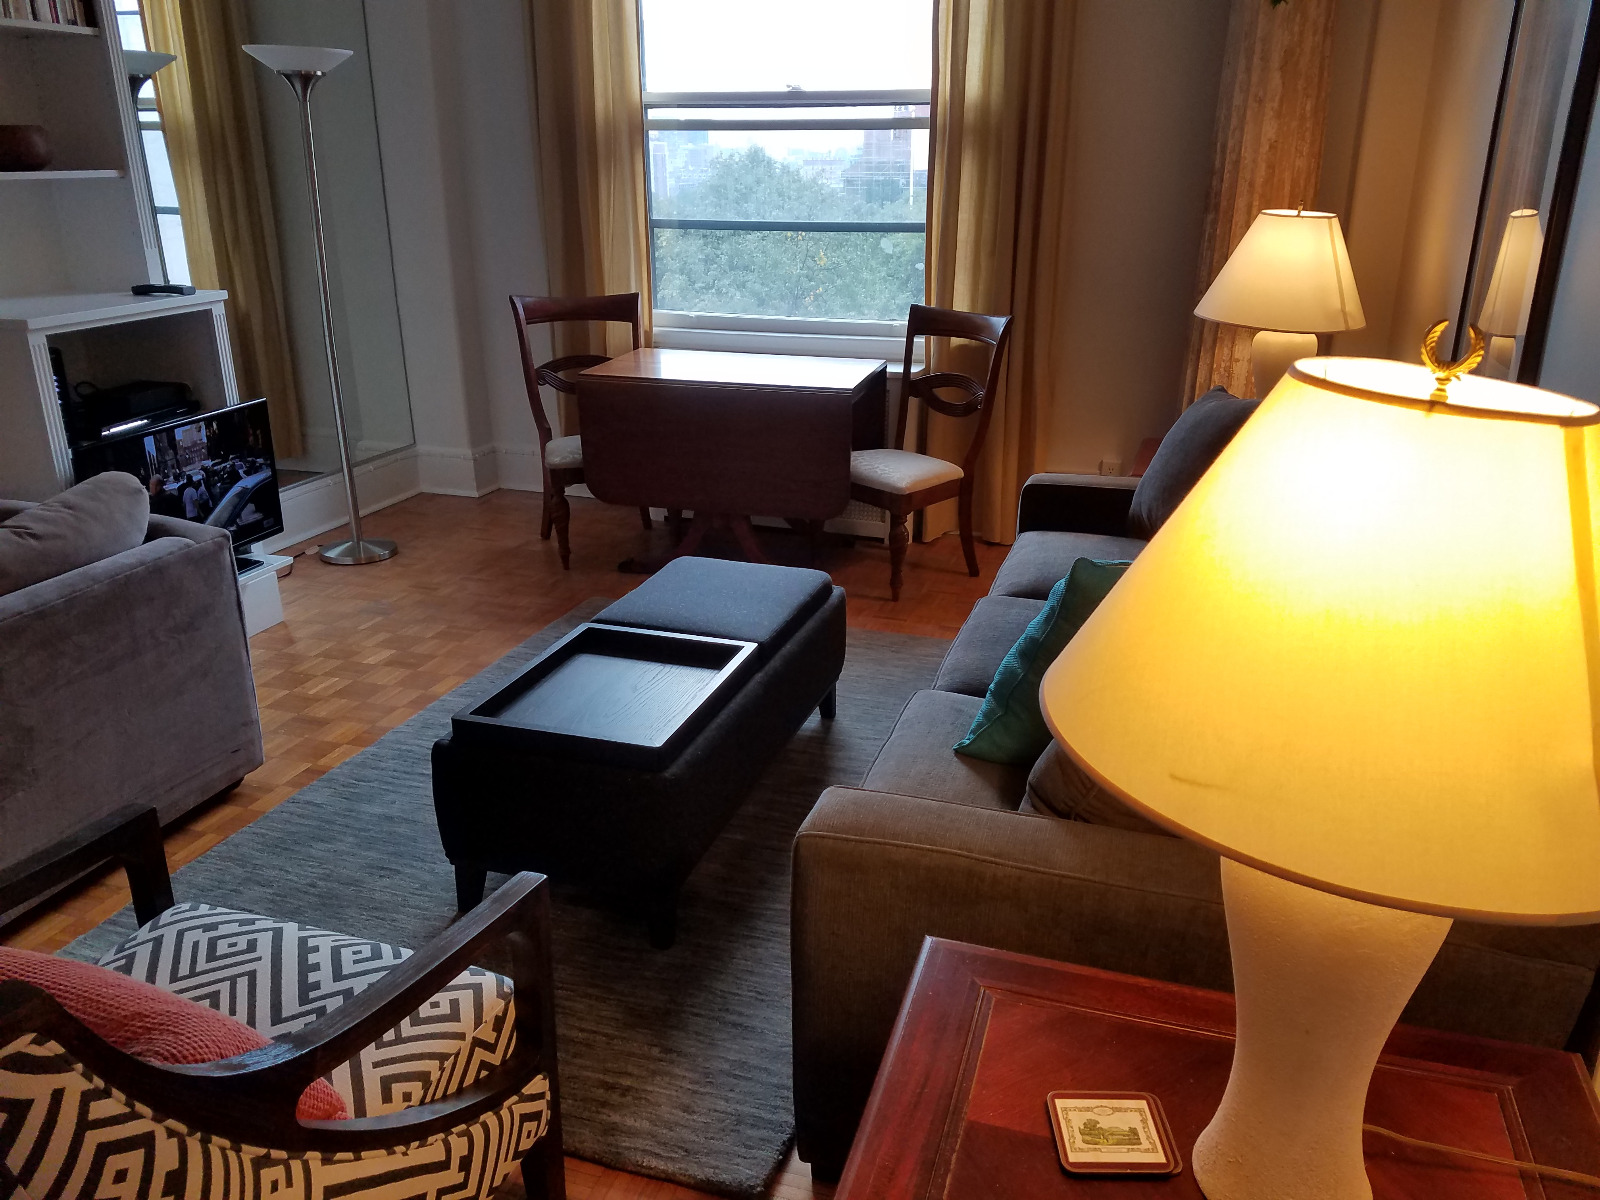 Photos of apartment on Beacon St.,Boston MA 02108